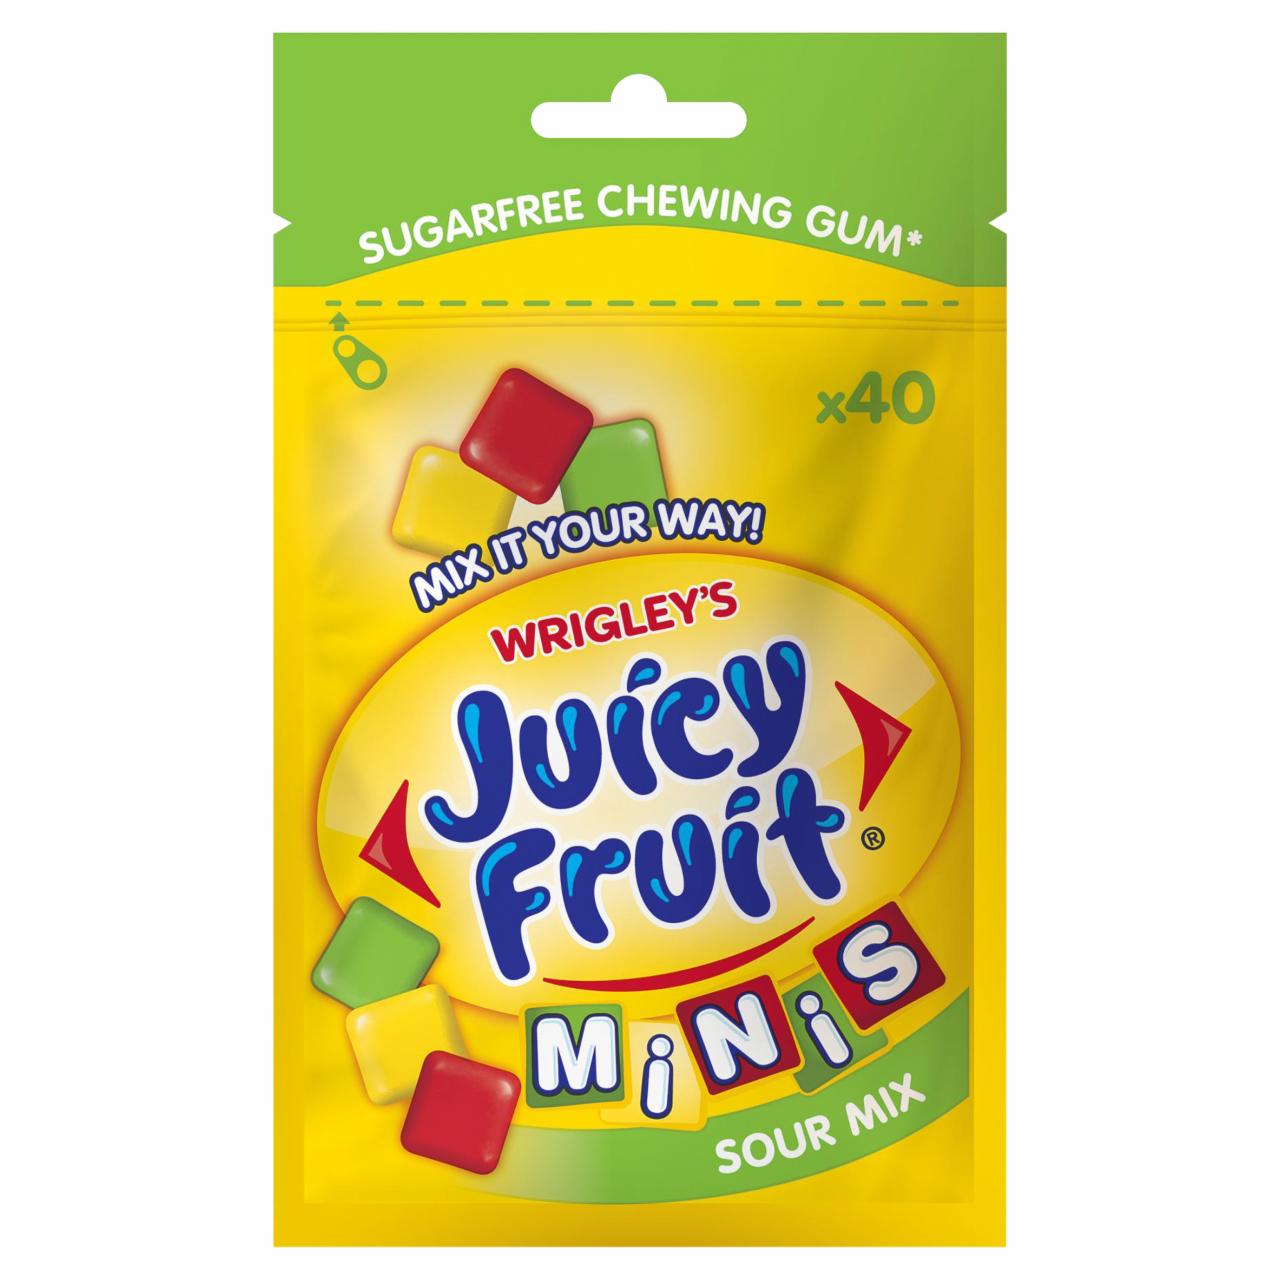 Képek - Juicy Fruit Minis Sour Mix savanyú gyümölcsízű rágógumi 28 g